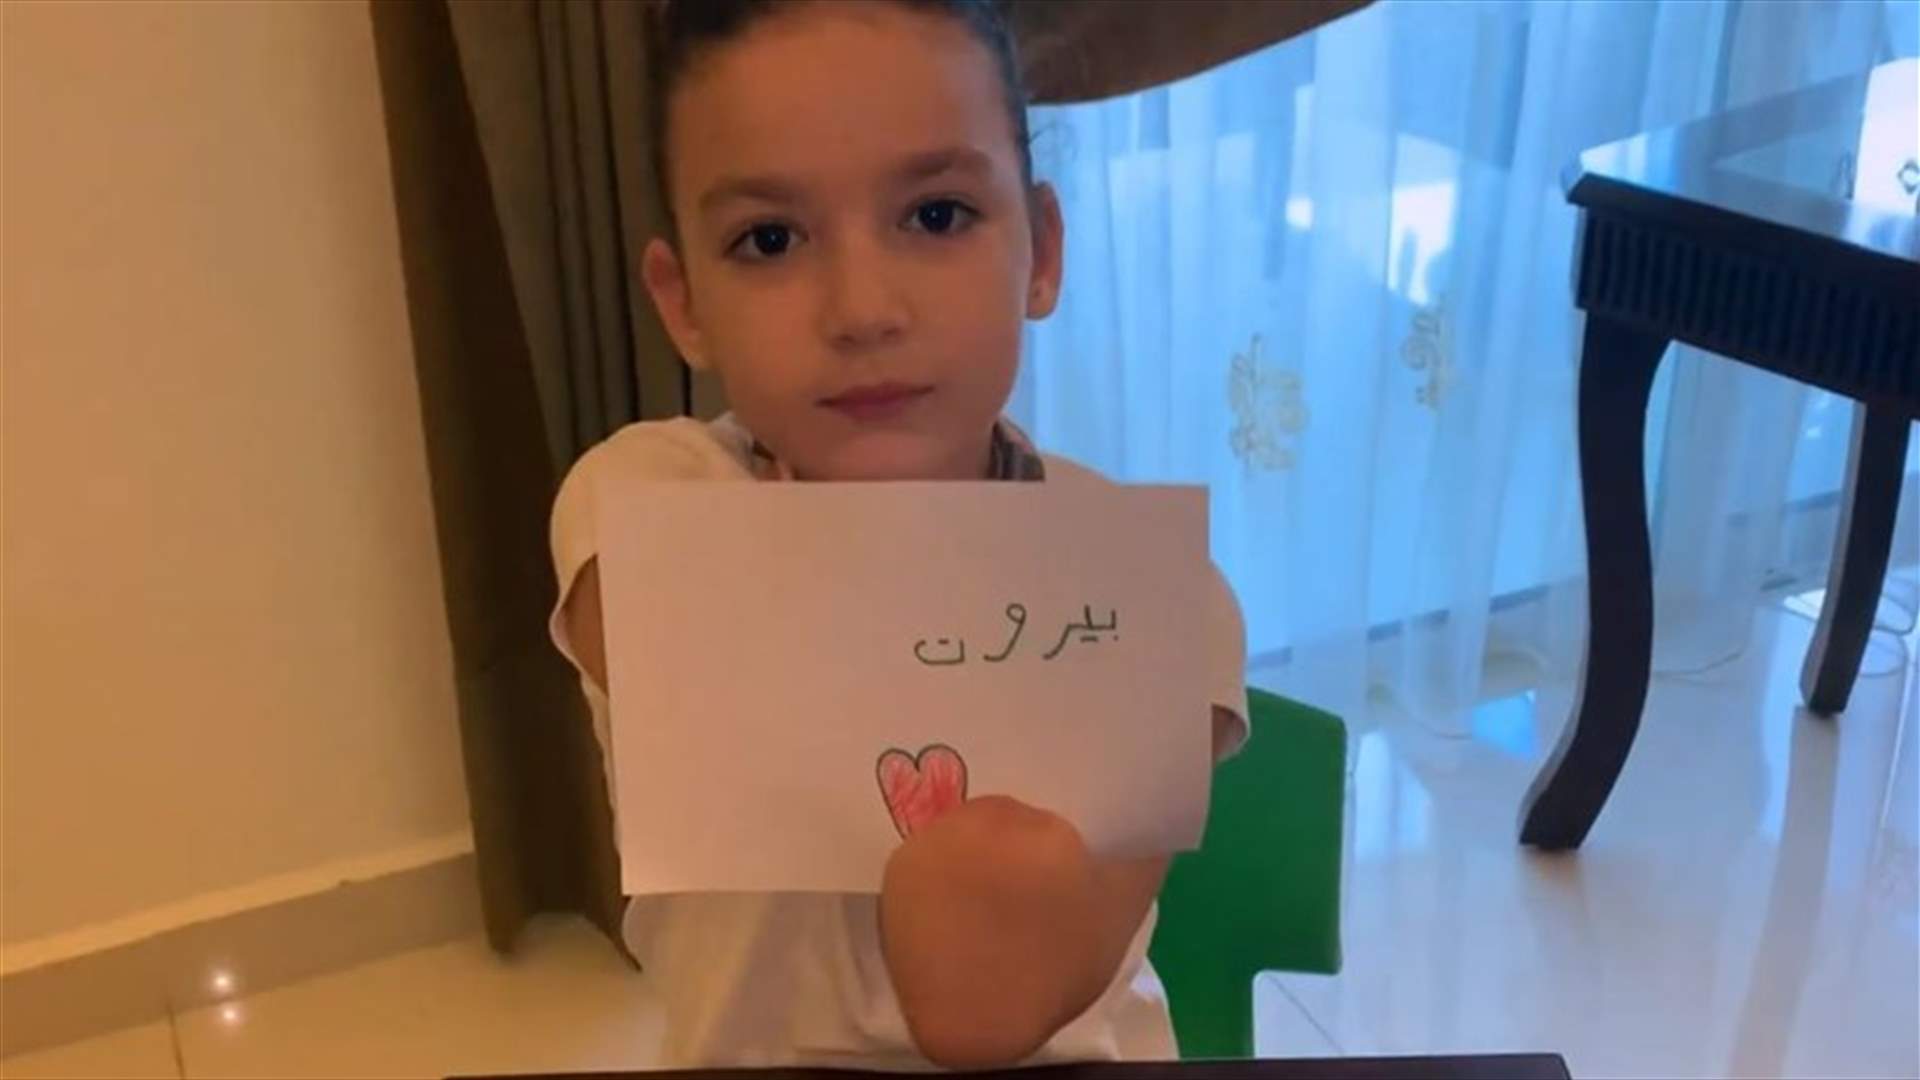 الطفلة إيلا طنوس تغني وتكتب بيروت الأمل! (فيديو)